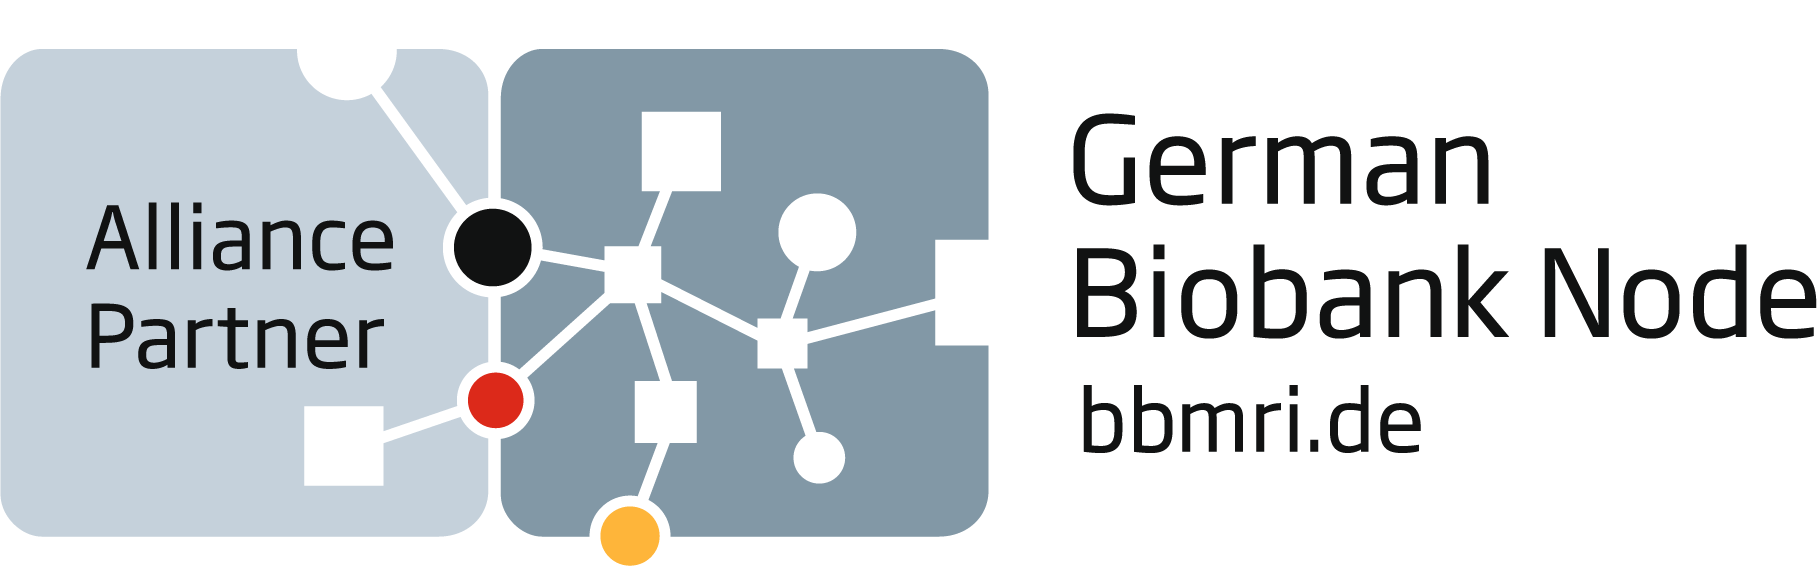 Logo GBN und Alliance Partner